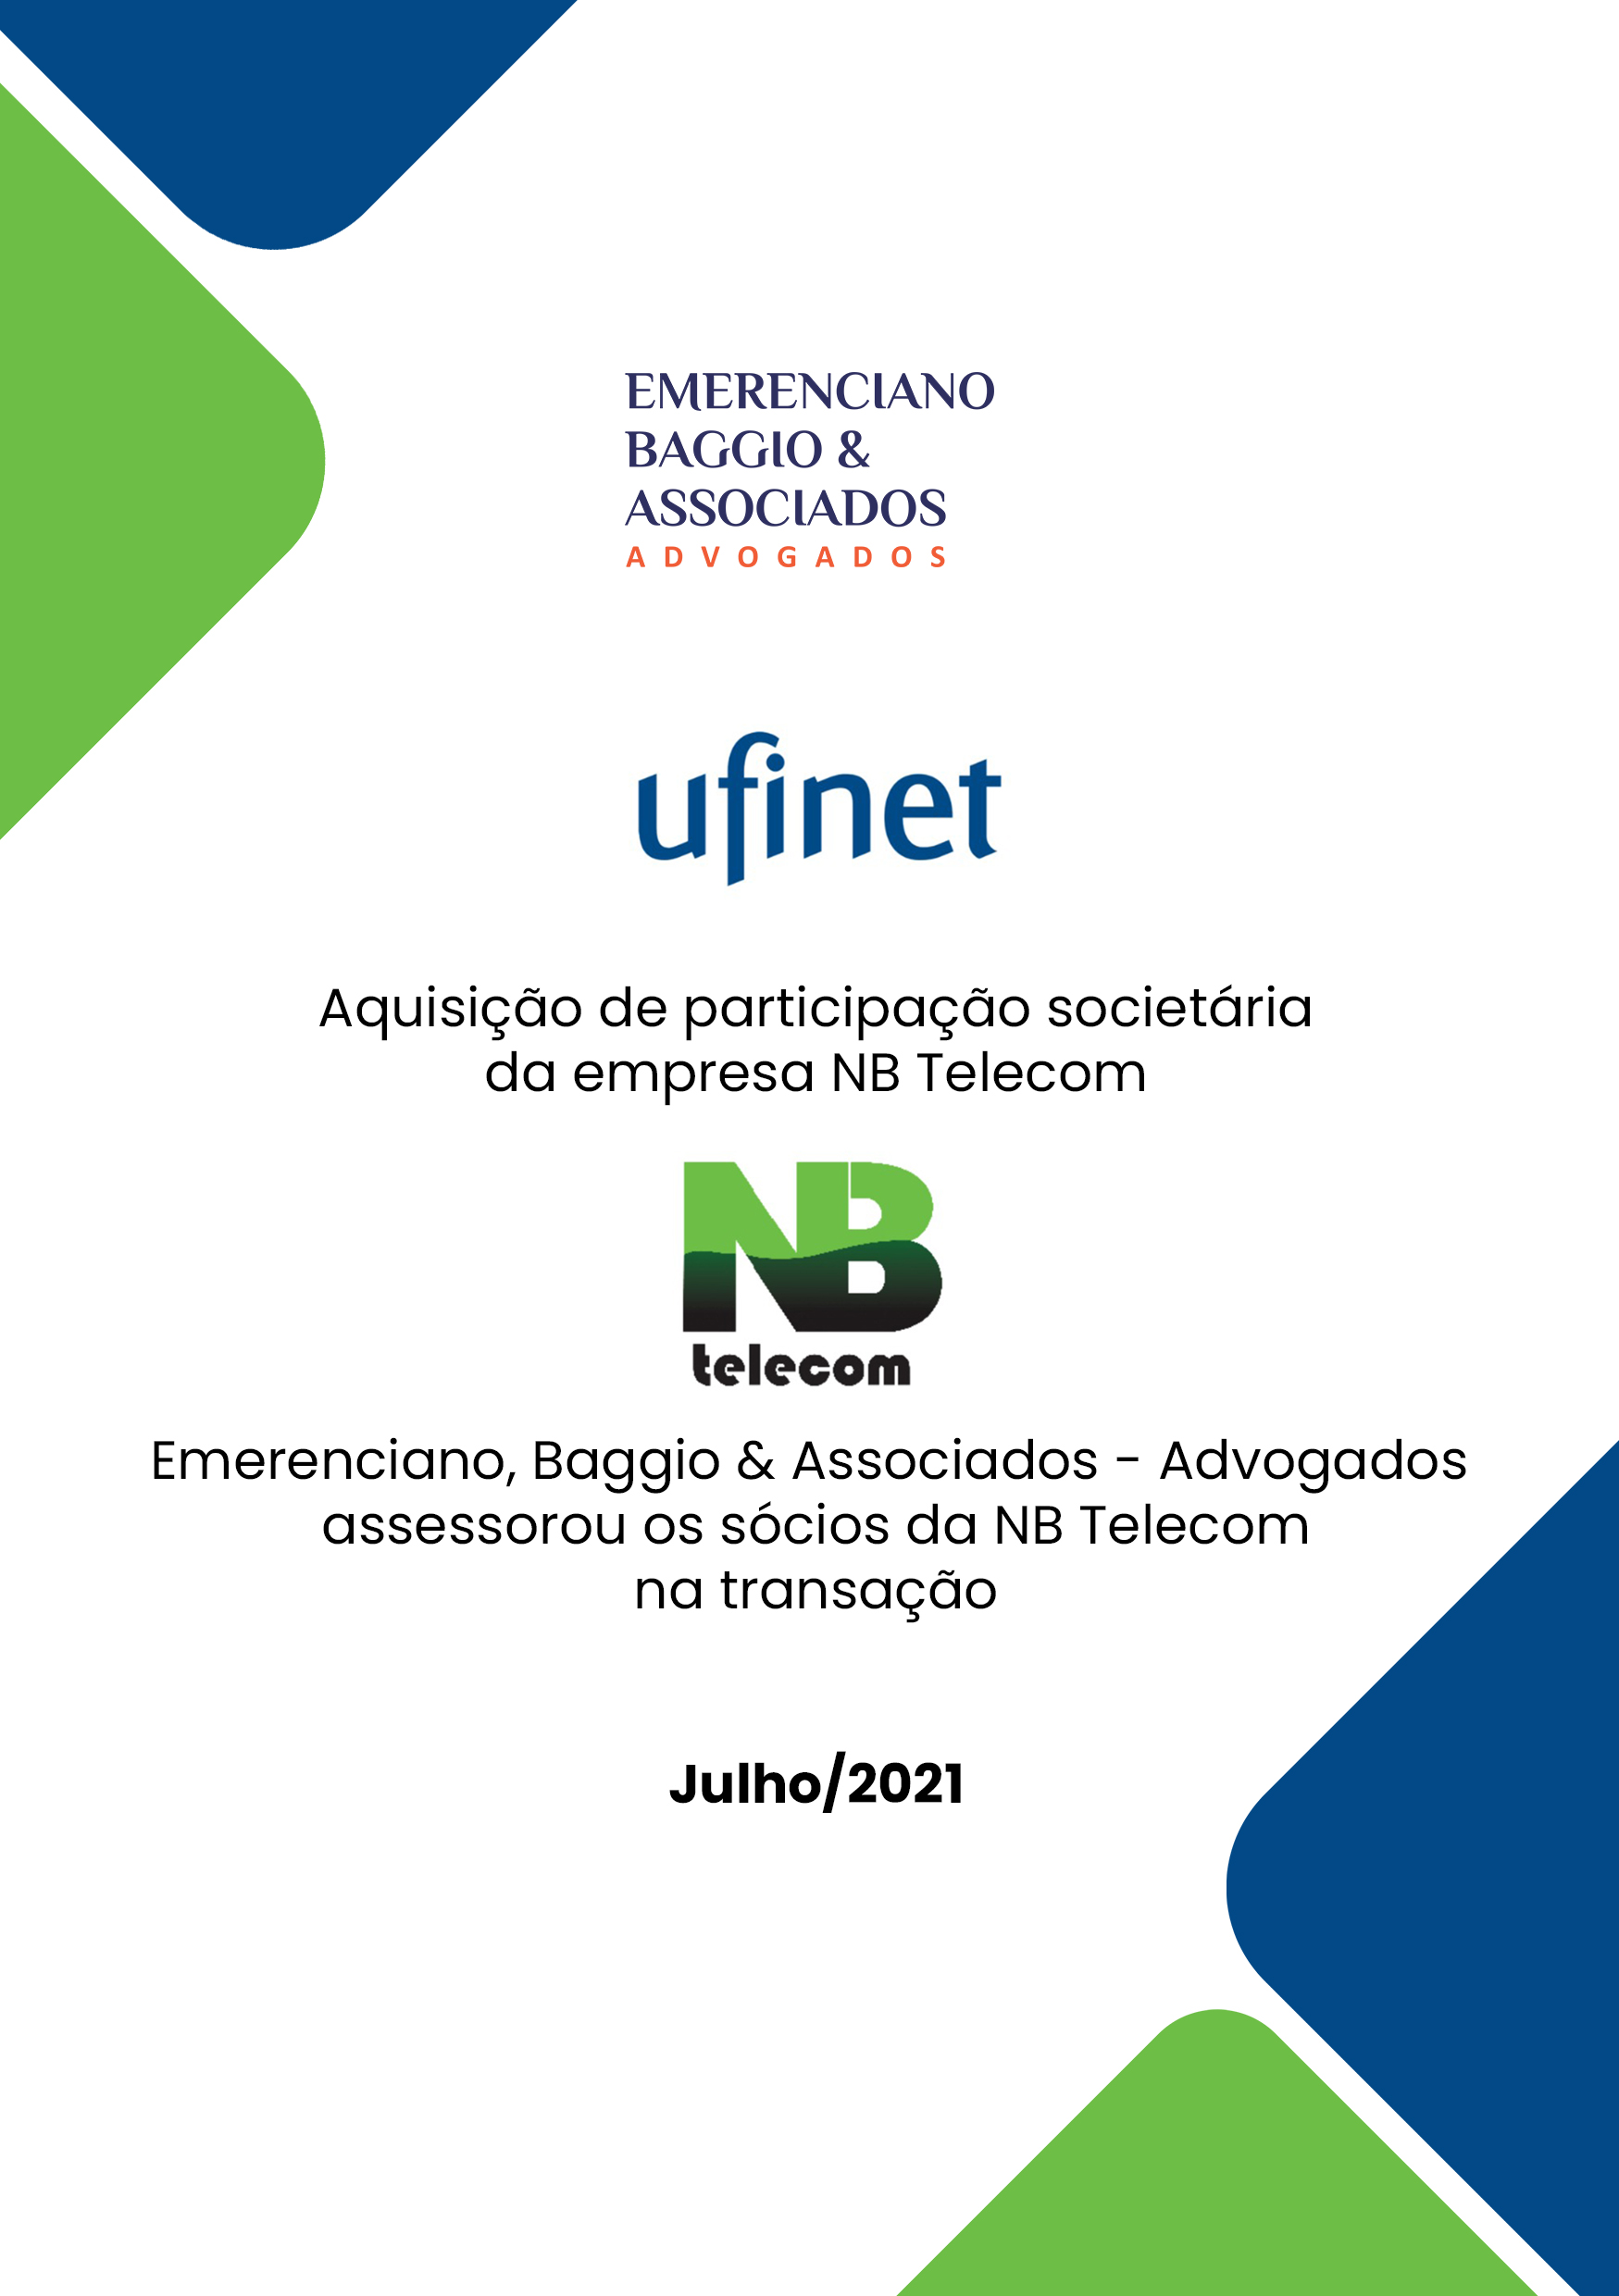 UFINET Expande no Brasil com Aquisição da NB Telecom, no Rio de